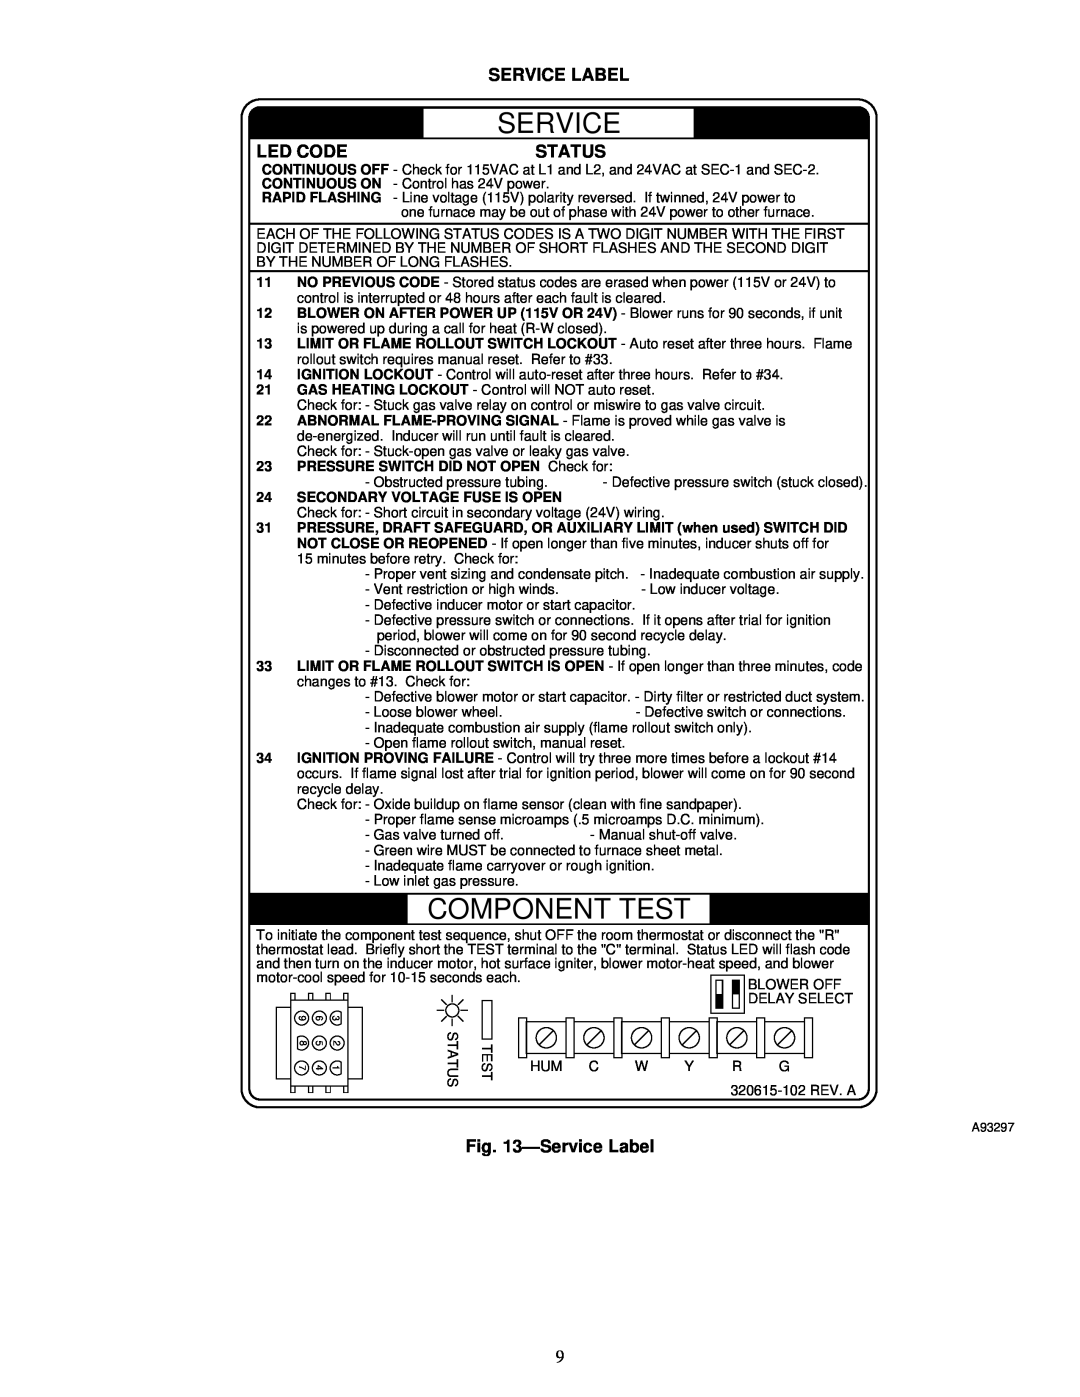 Carrier 58PAV, 58RAV instruction manual Led Code, Status, ÐService Label, Component Test 